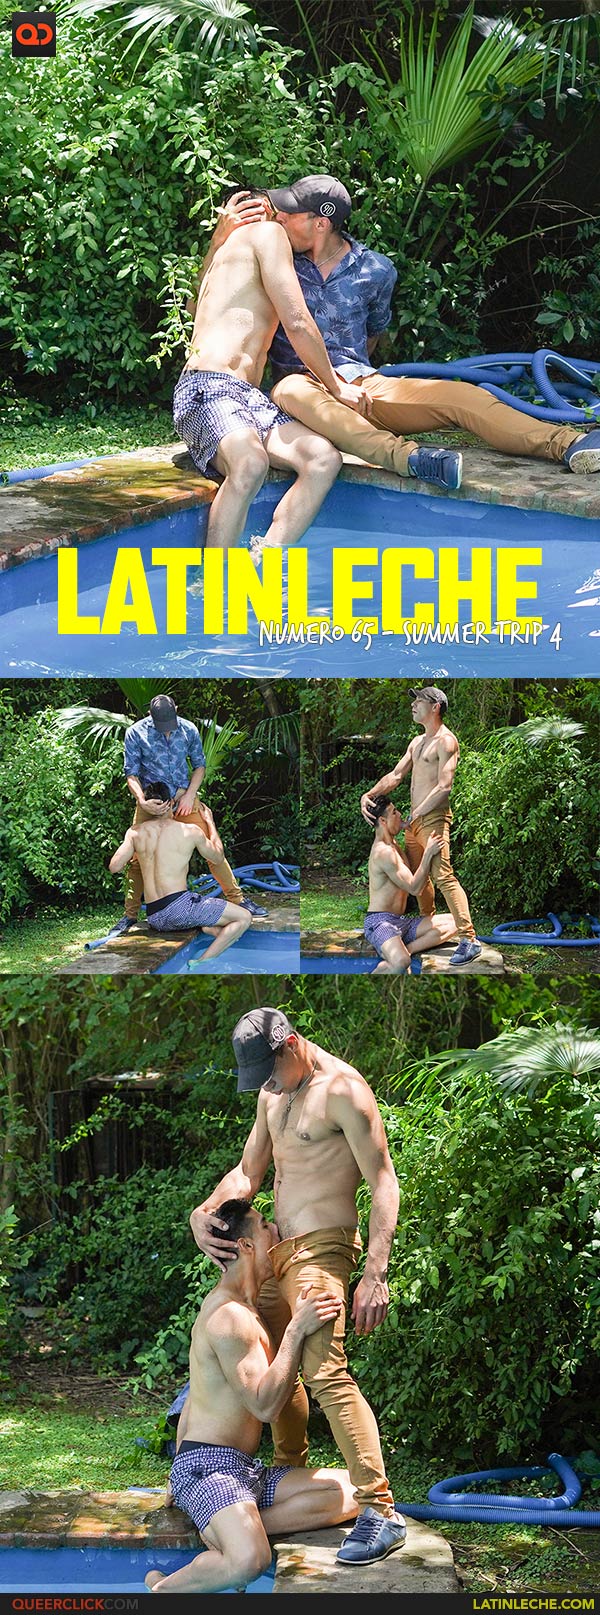 Latin Leche: Numero 65 - Summer Trip 4